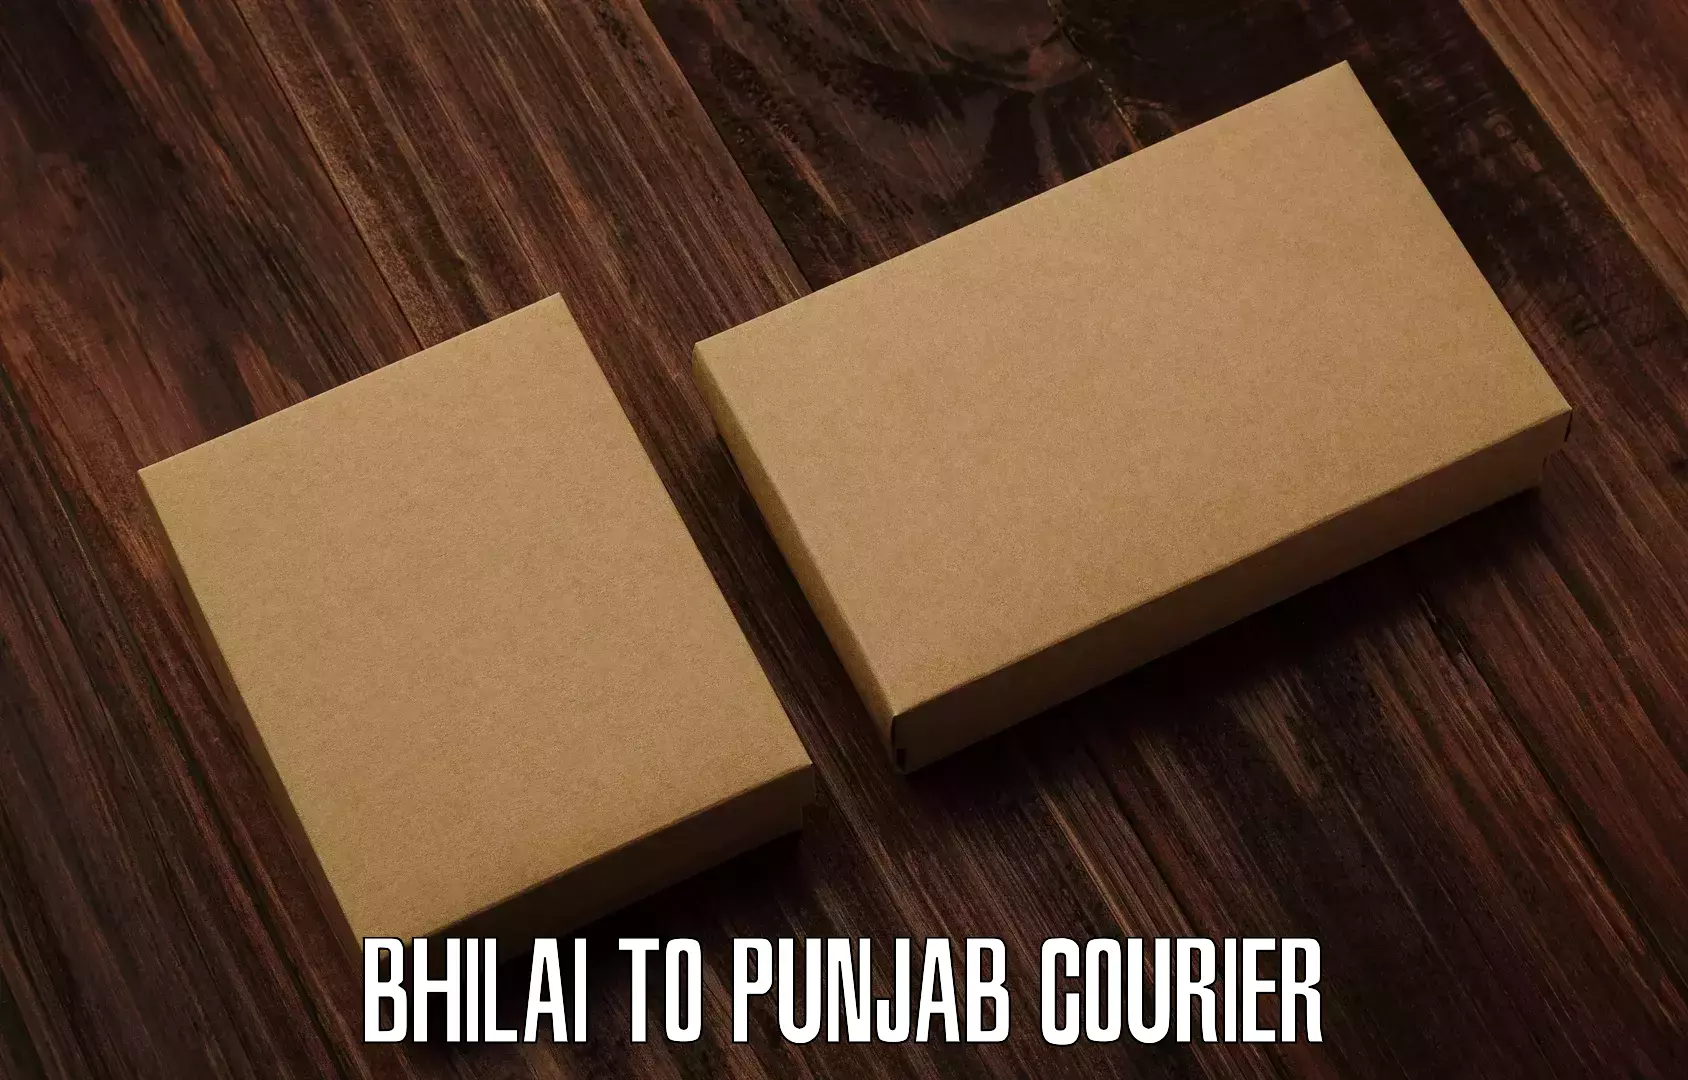 Affordable international shipping Bhilai to Punjab